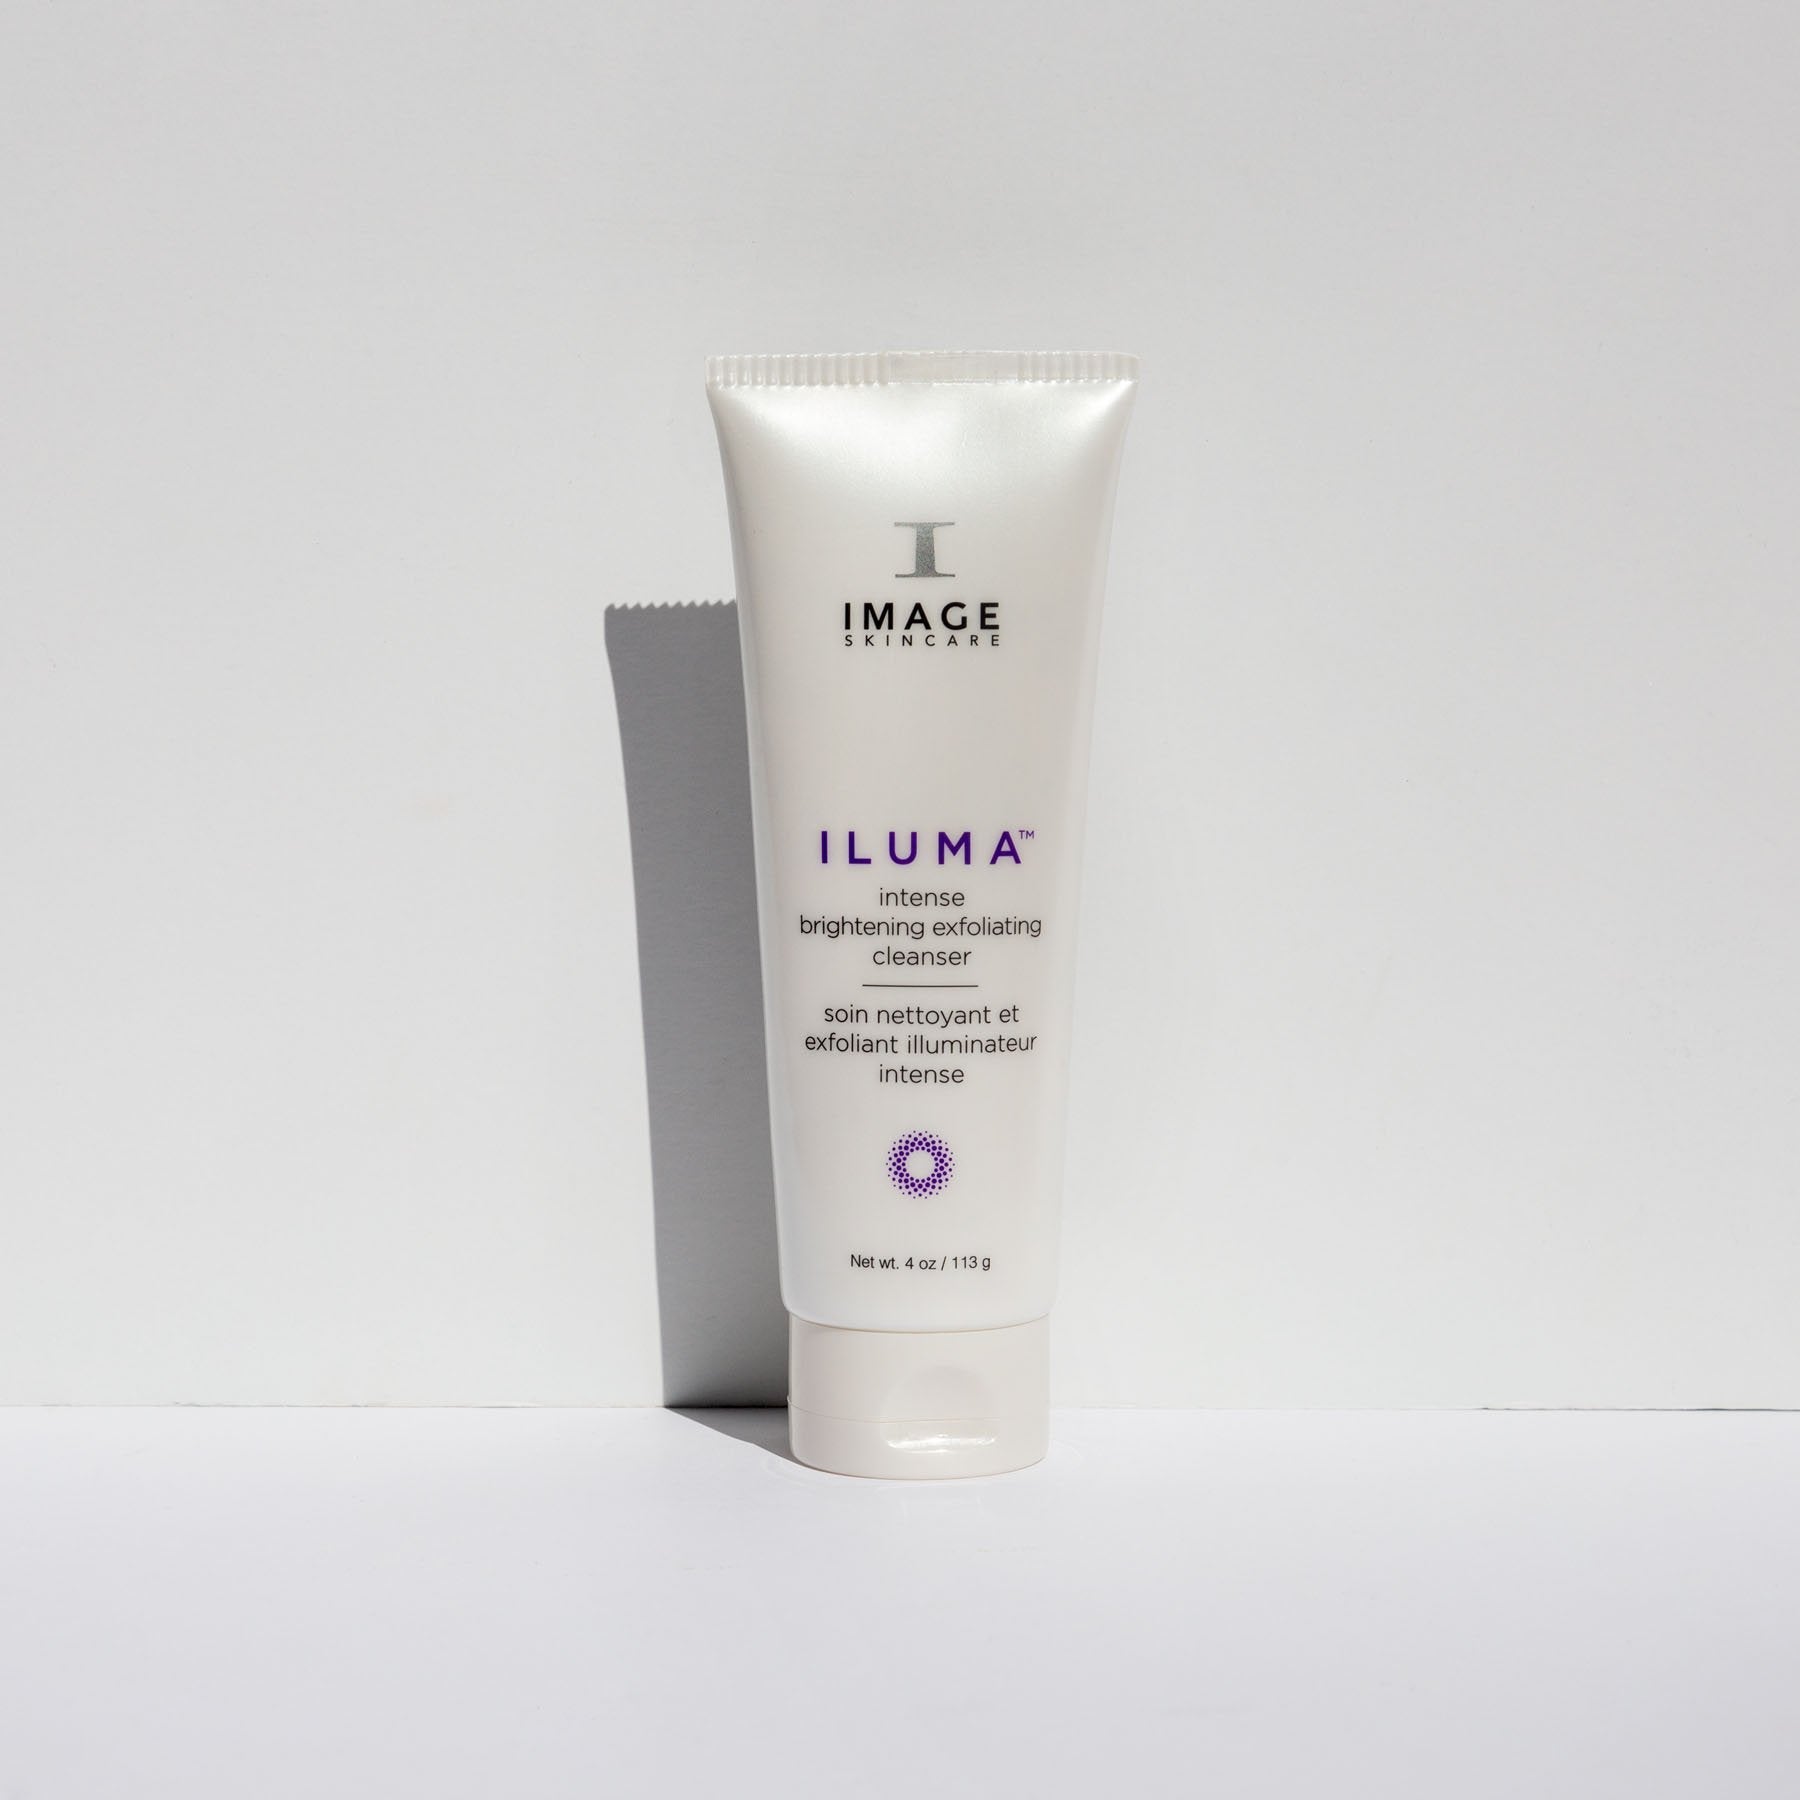 ILUMA intense brightening exfoliating cleanser | IMAGE Skincare